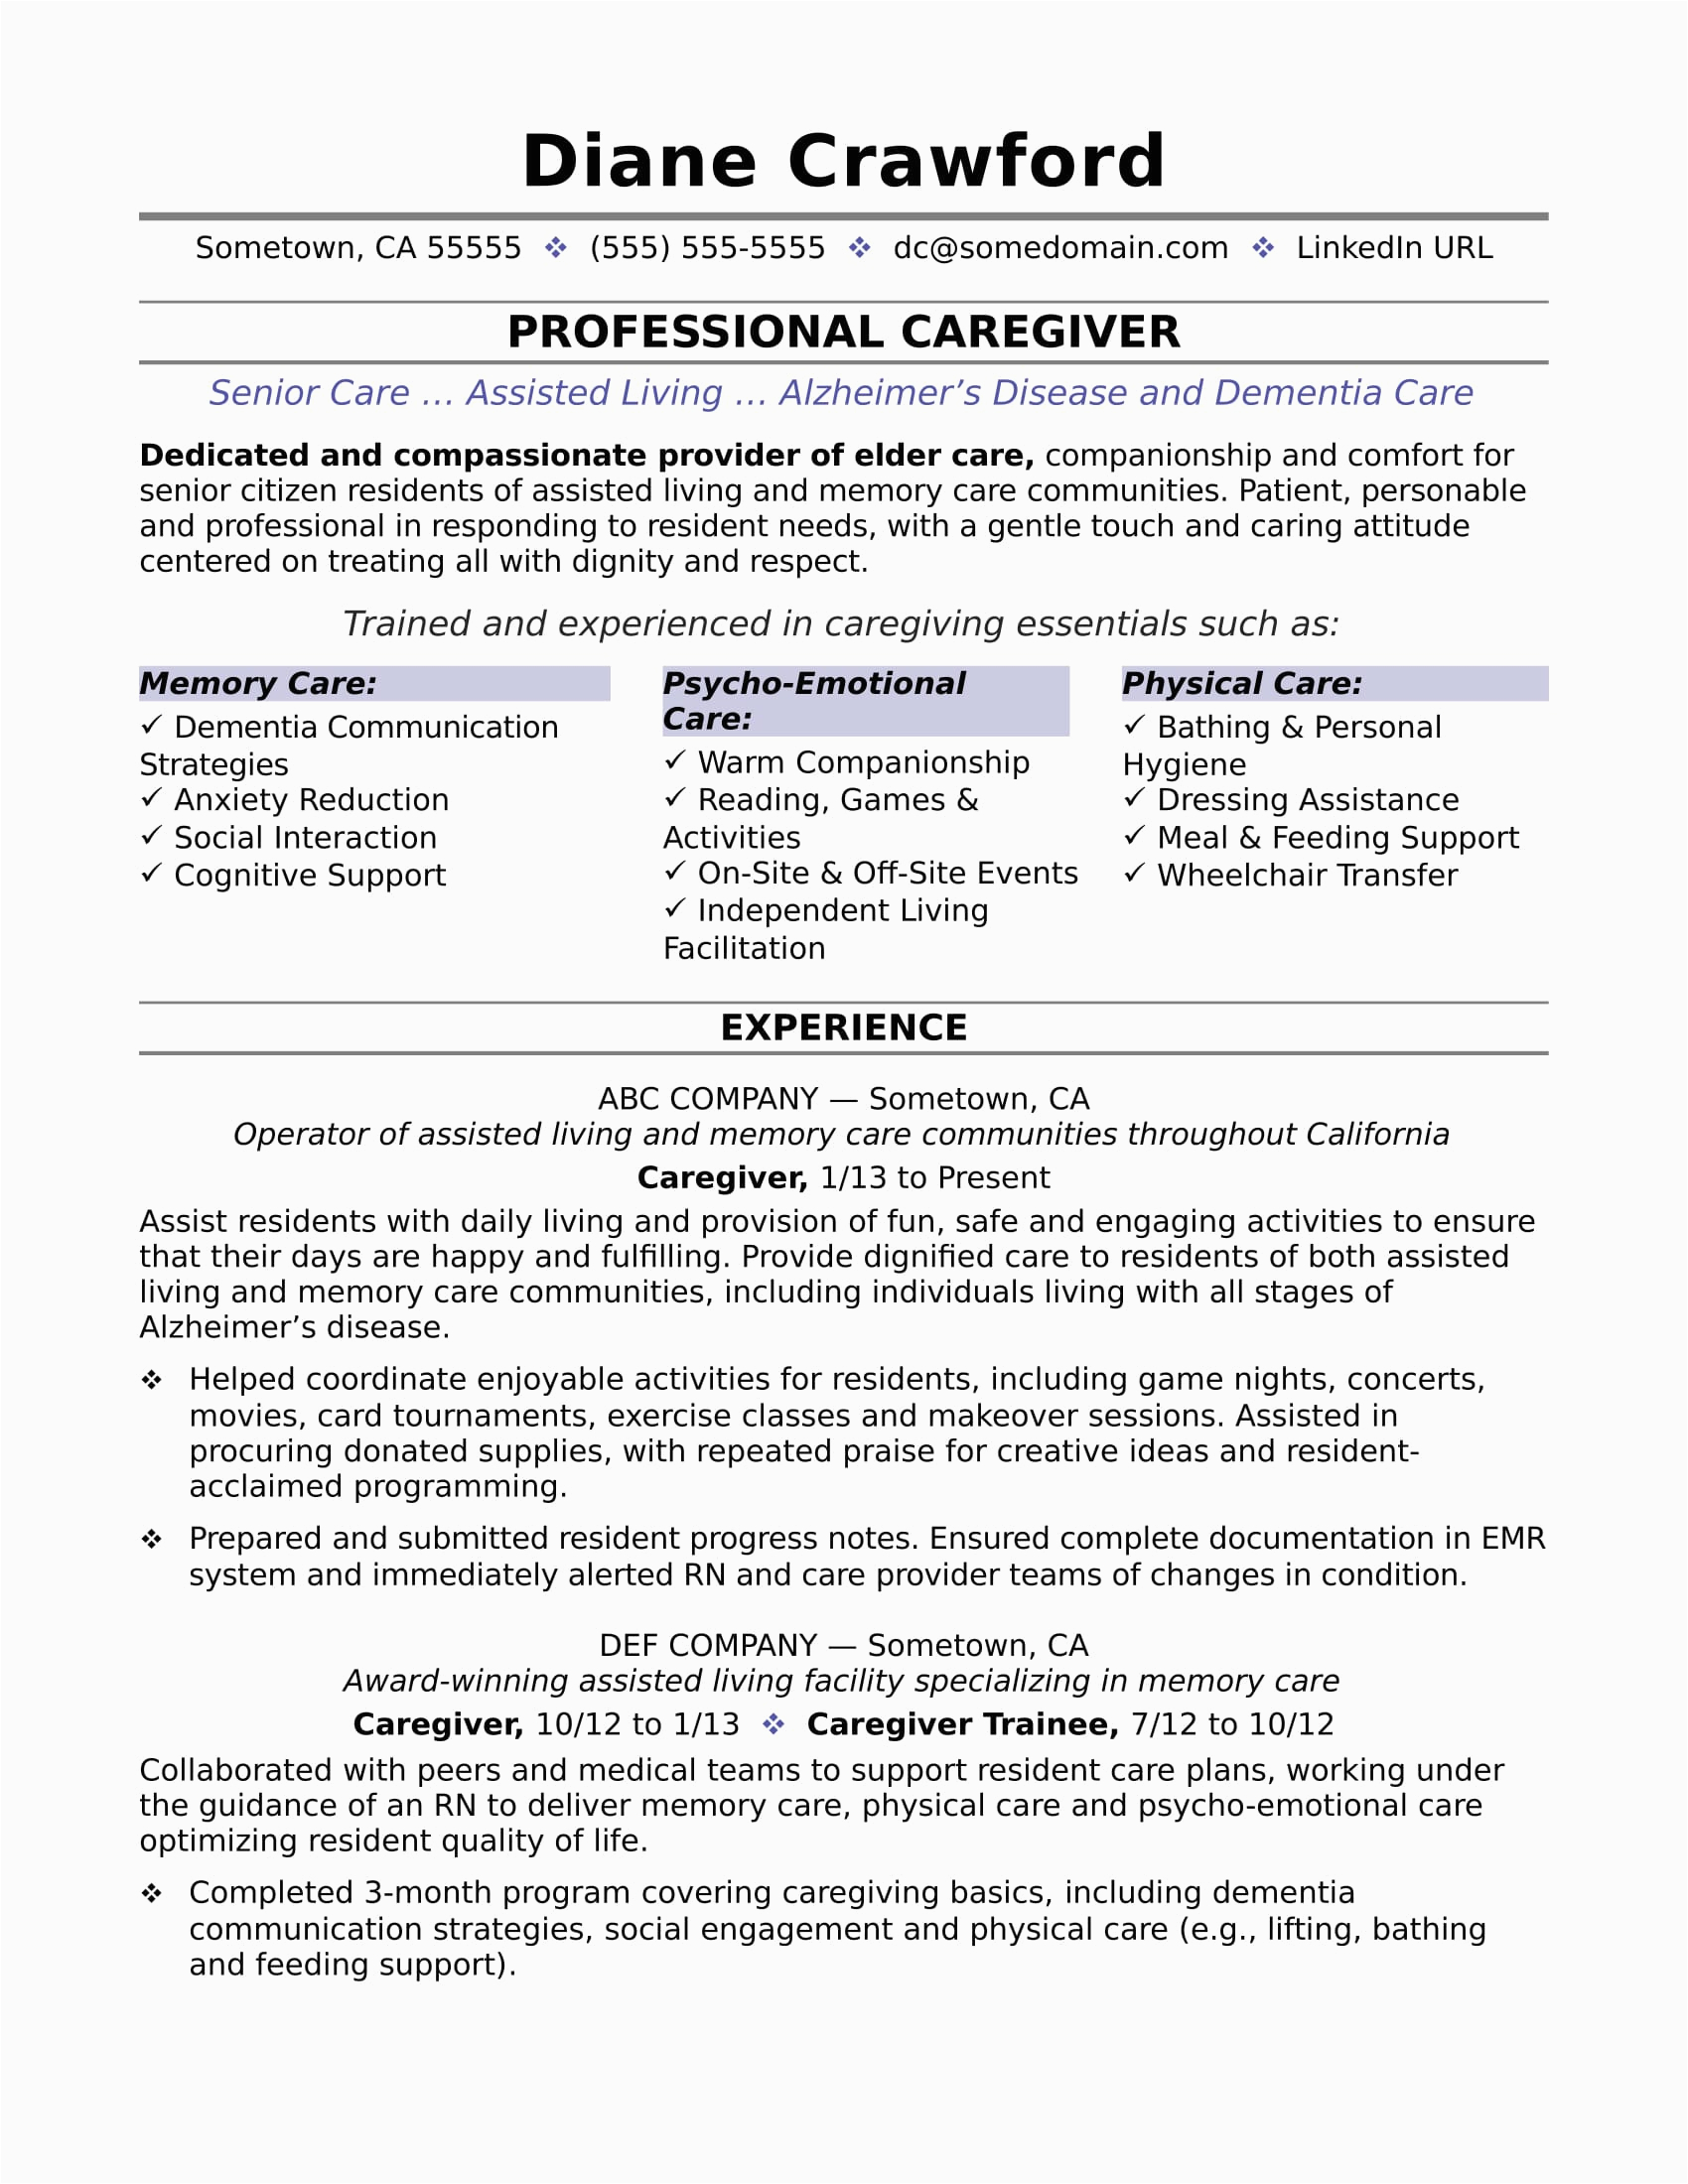 Sample Resume for Aged Care Worker Position Caregiver Resume Sample